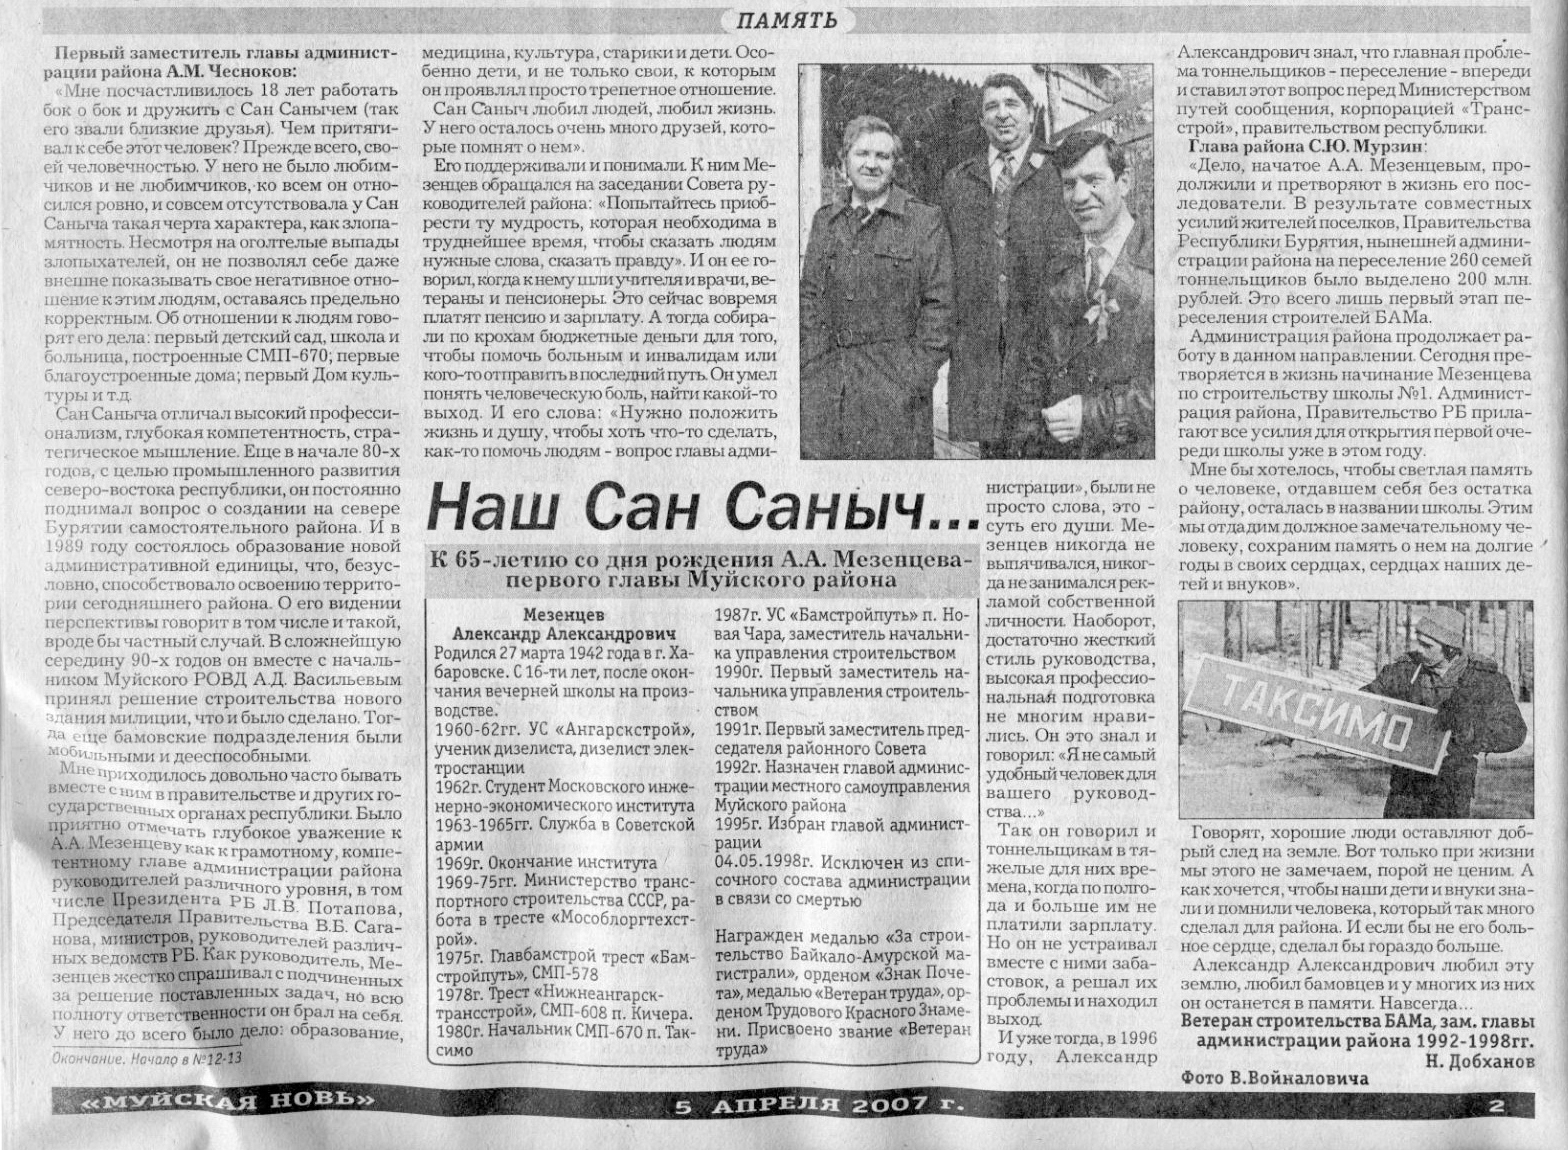 Наш Сан Саныч. Статья в газете 'Муйская новь' от 5 апреля 2007 года. Окончание